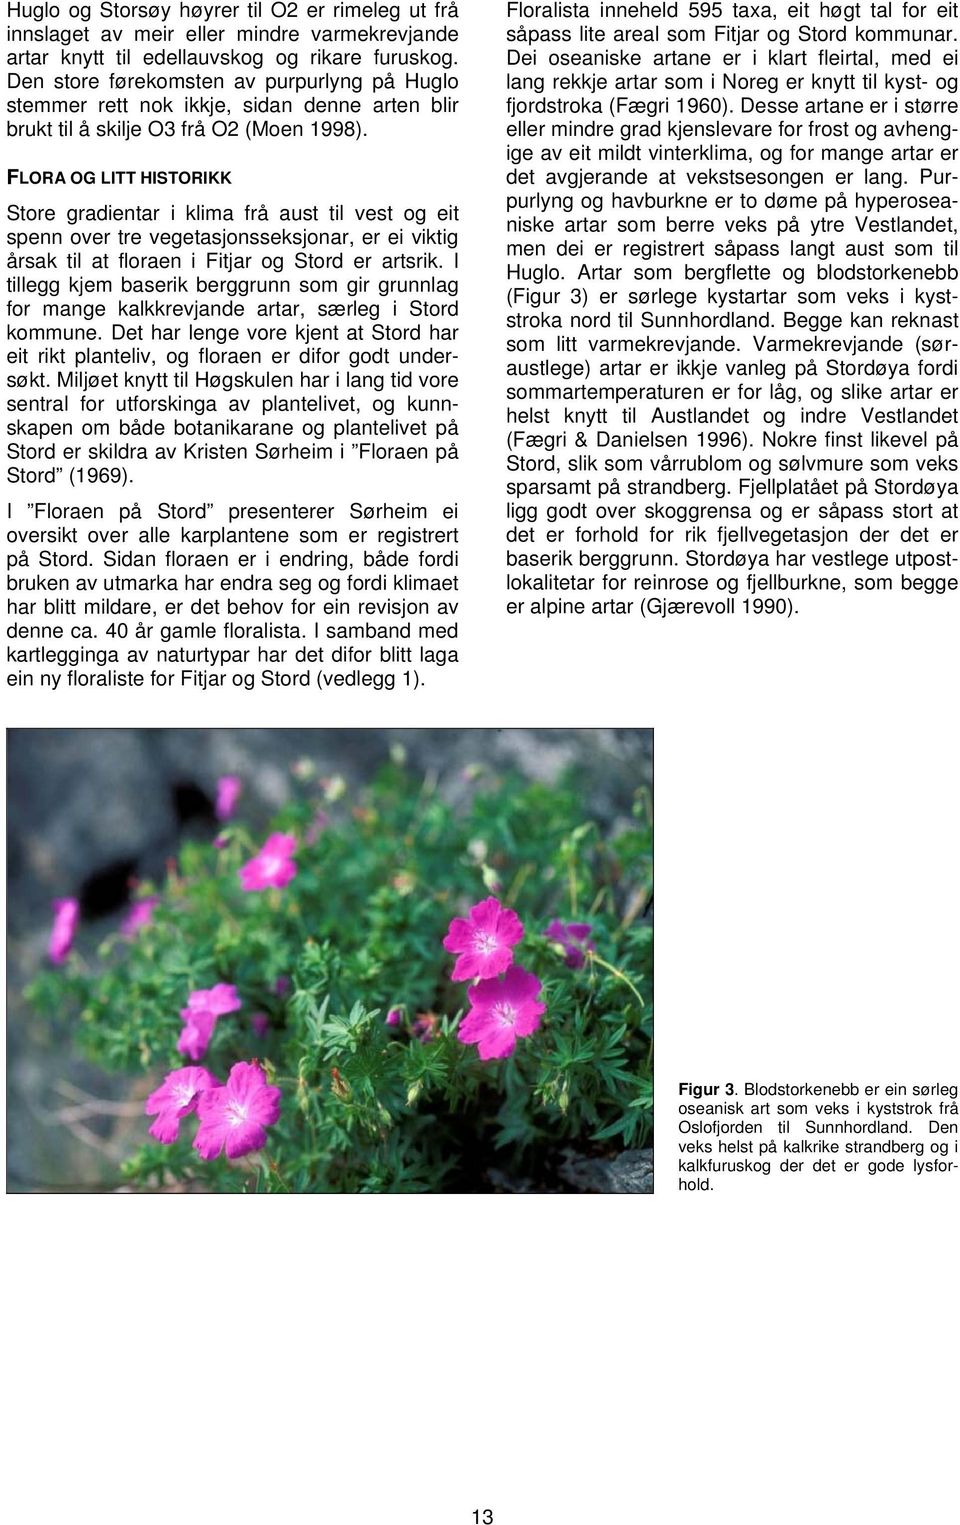 FLORA OG LITT HISTORIKK Store gradientar i klima frå aust til vest og eit spenn over tre vegetasjonsseksjonar, er ei viktig årsak til at floraen i Fitjar og Stord er artsrik.